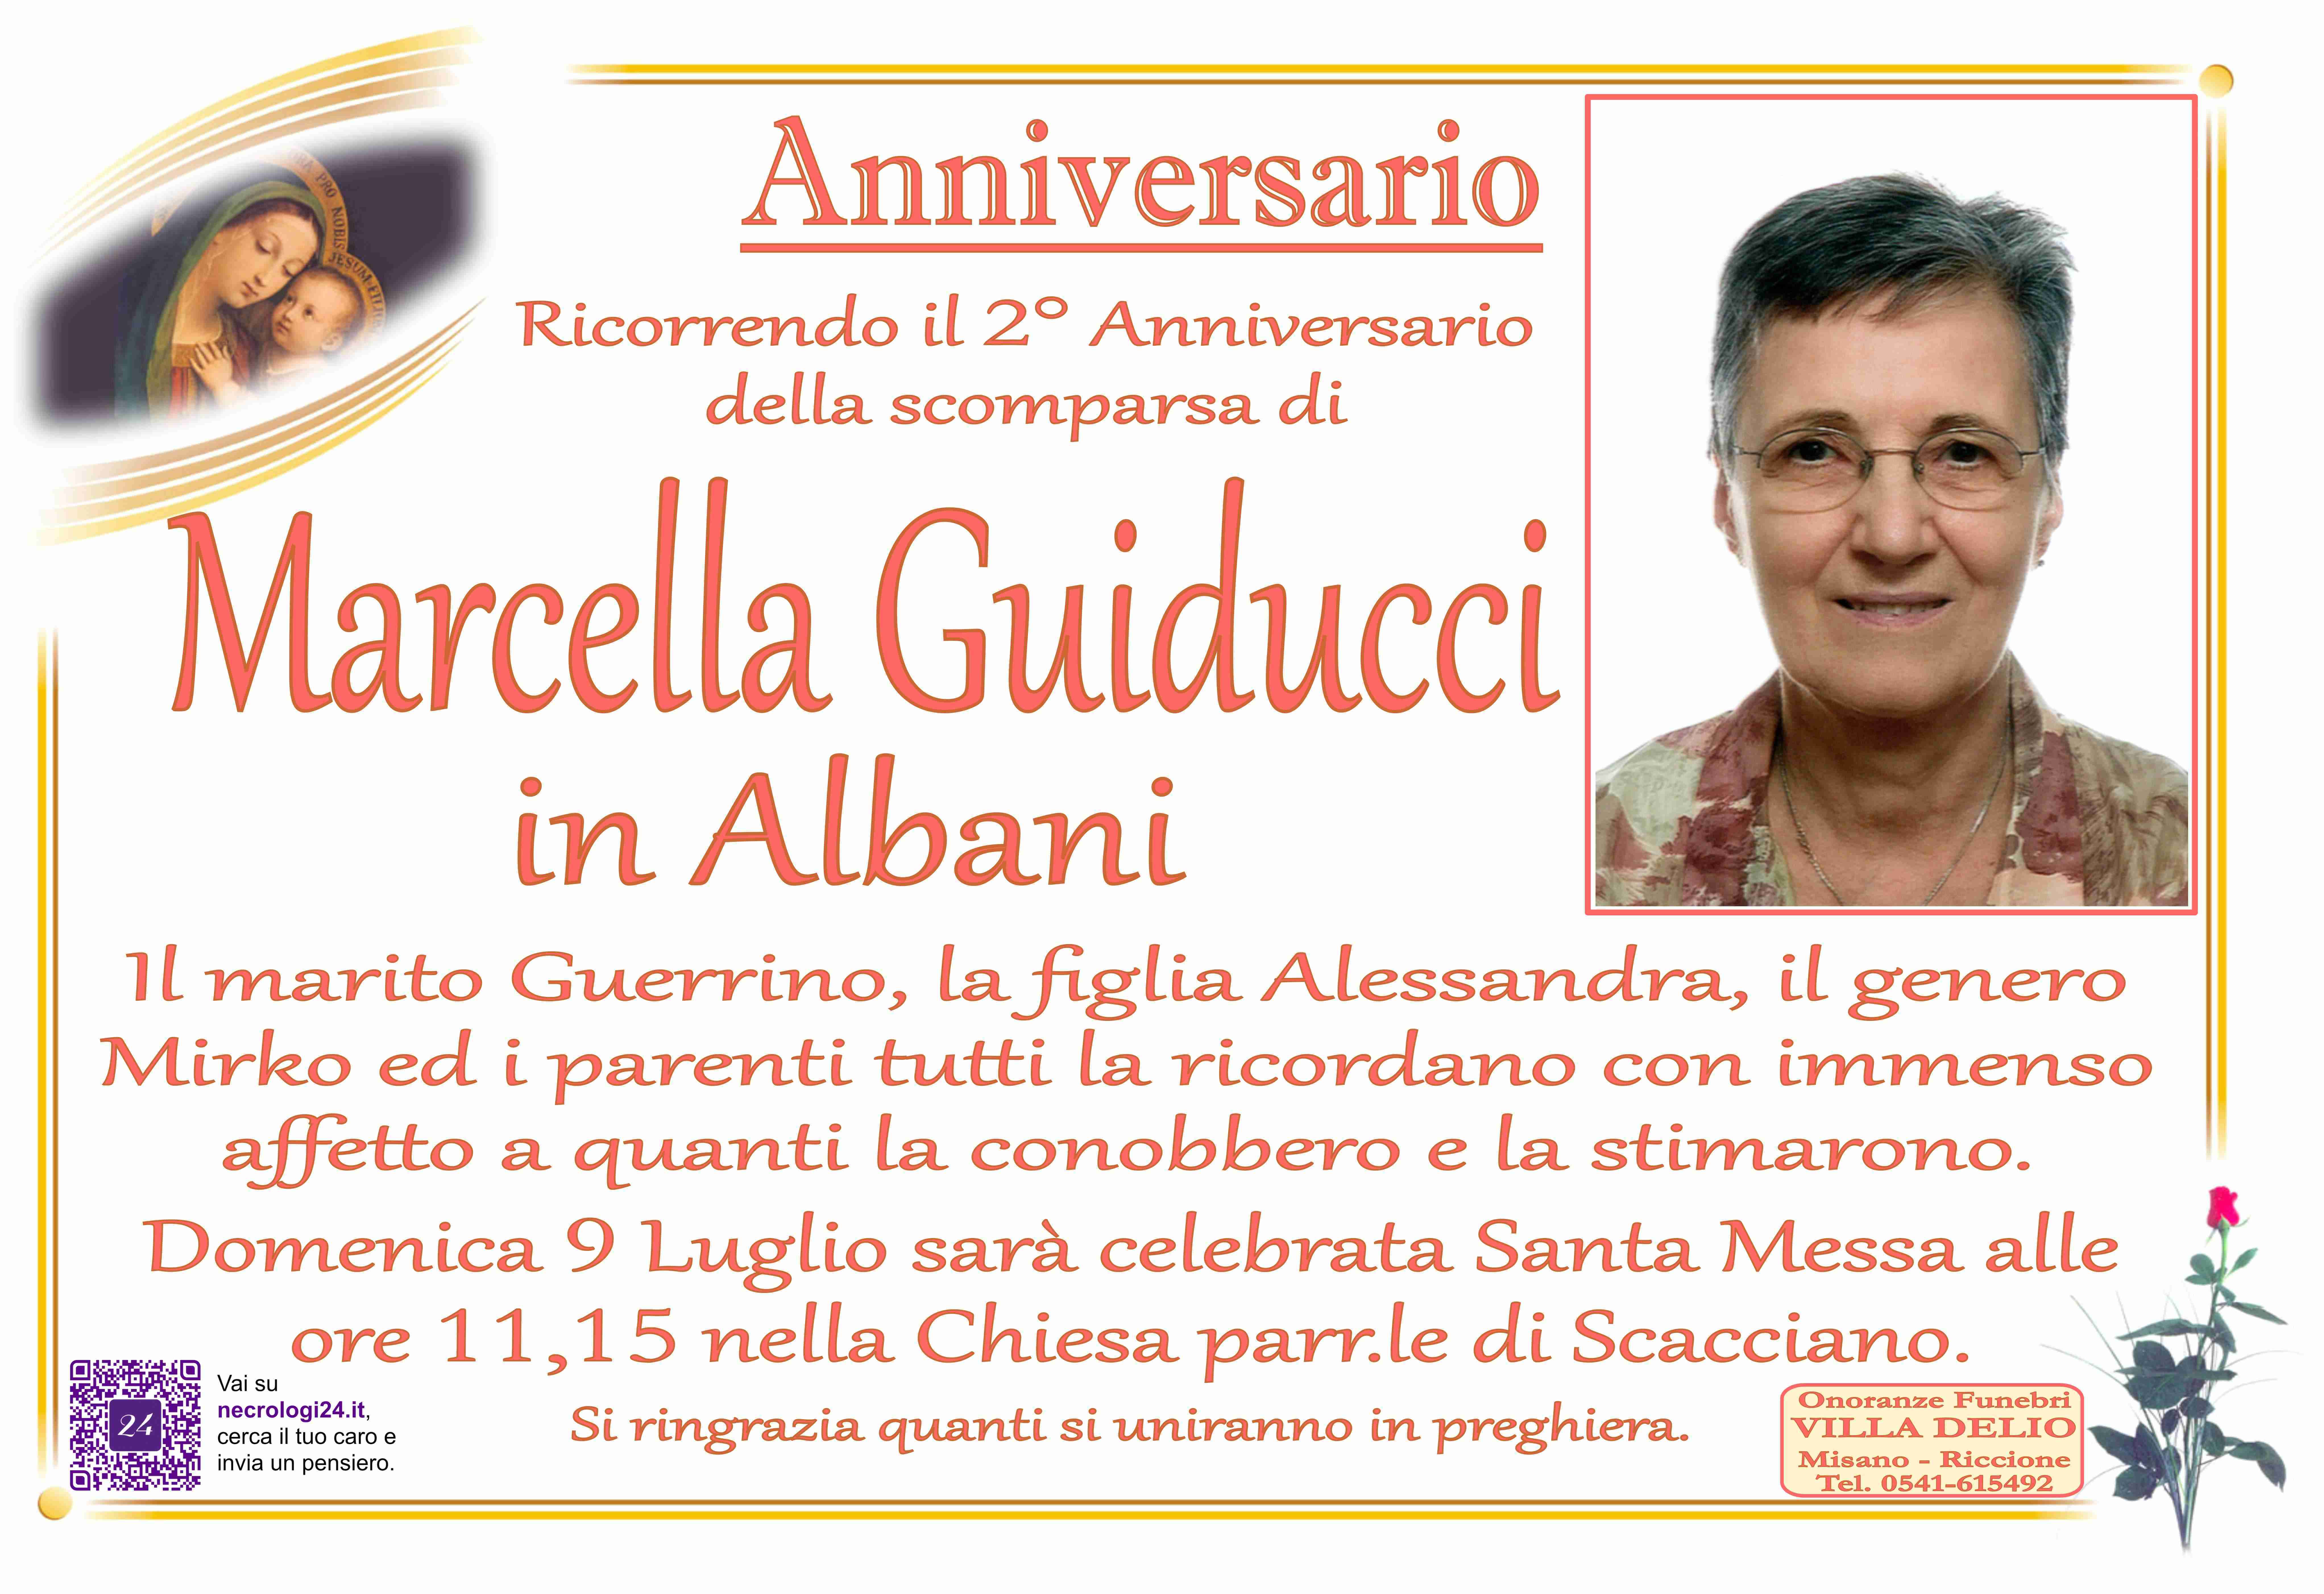 Marcella Guiducci